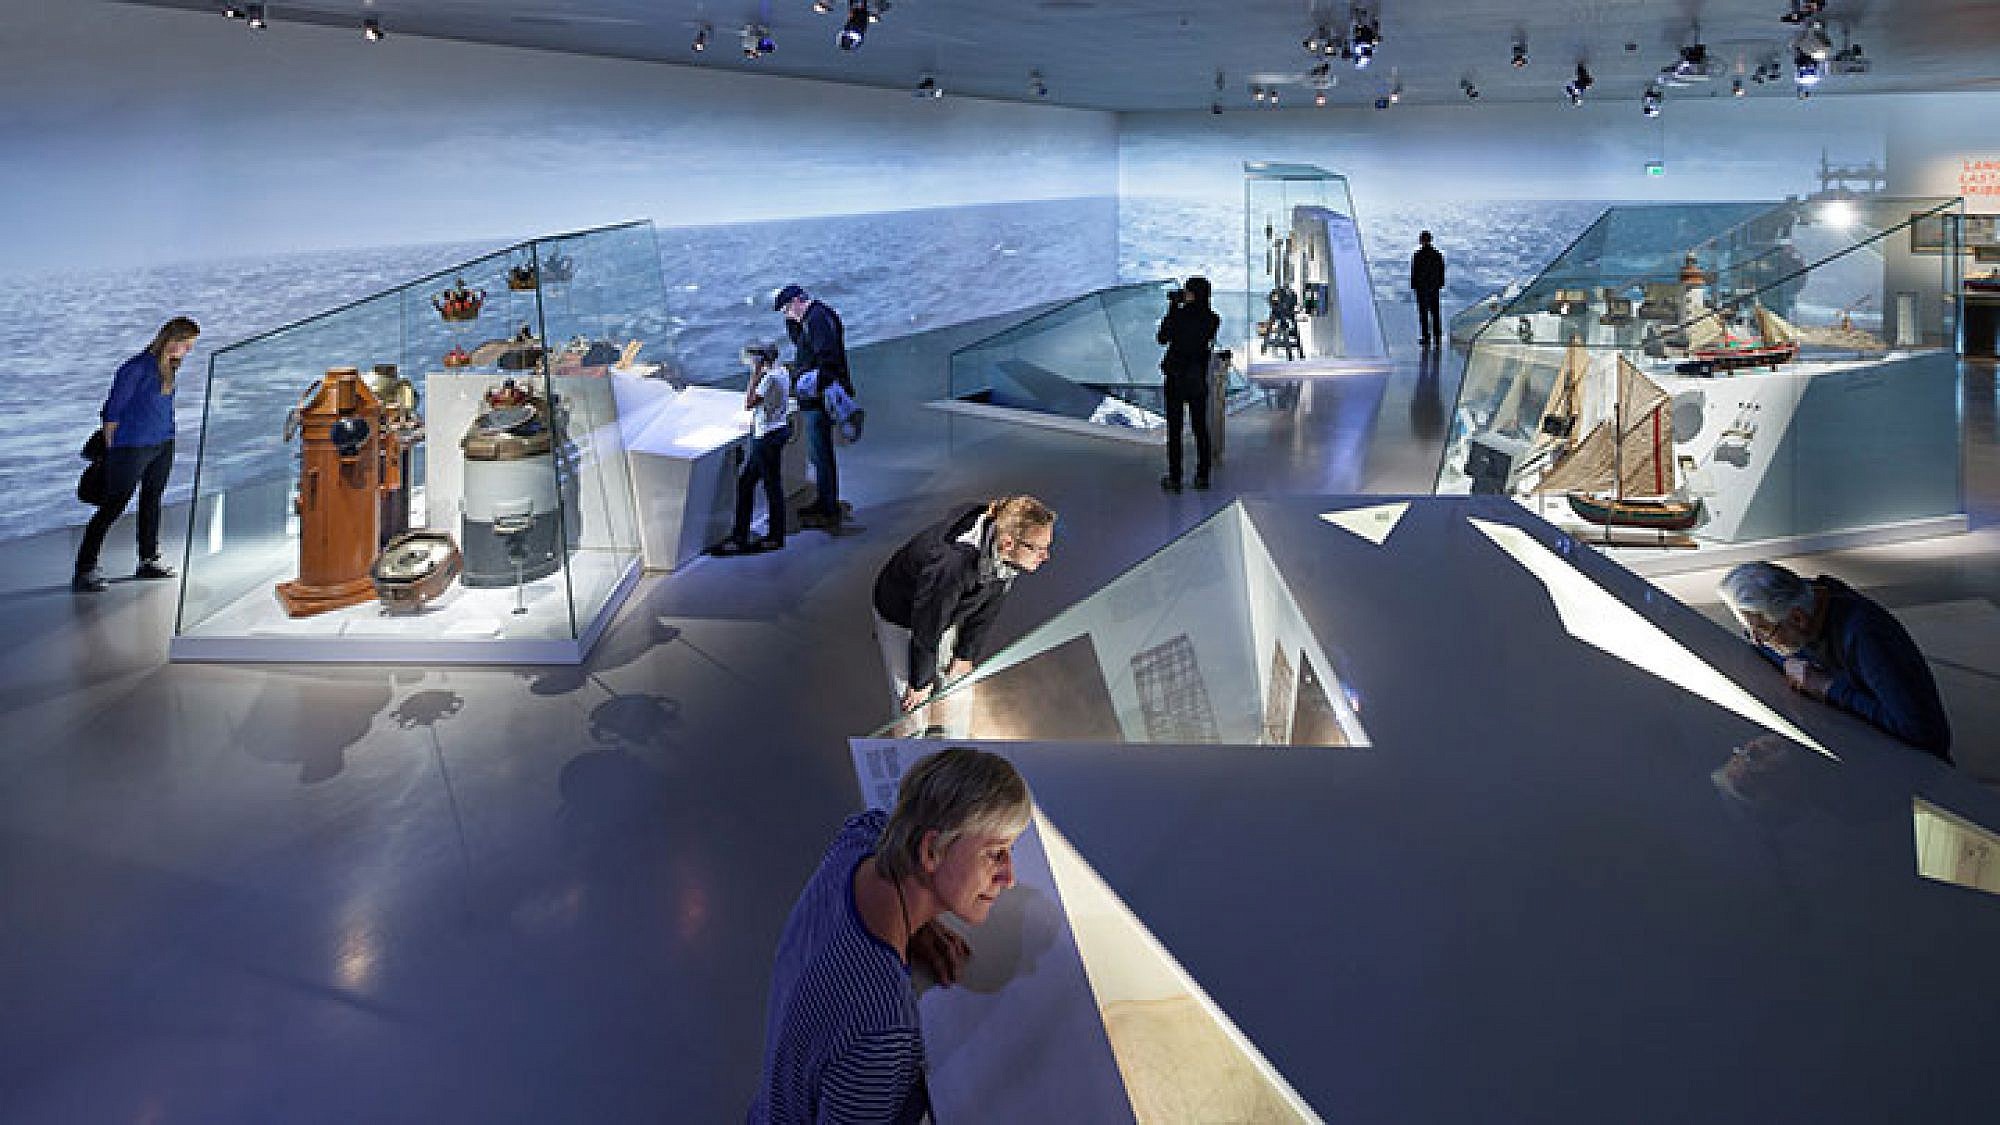 המוזיאון הימי של דנמרק | צילום: Thijs Wolzak